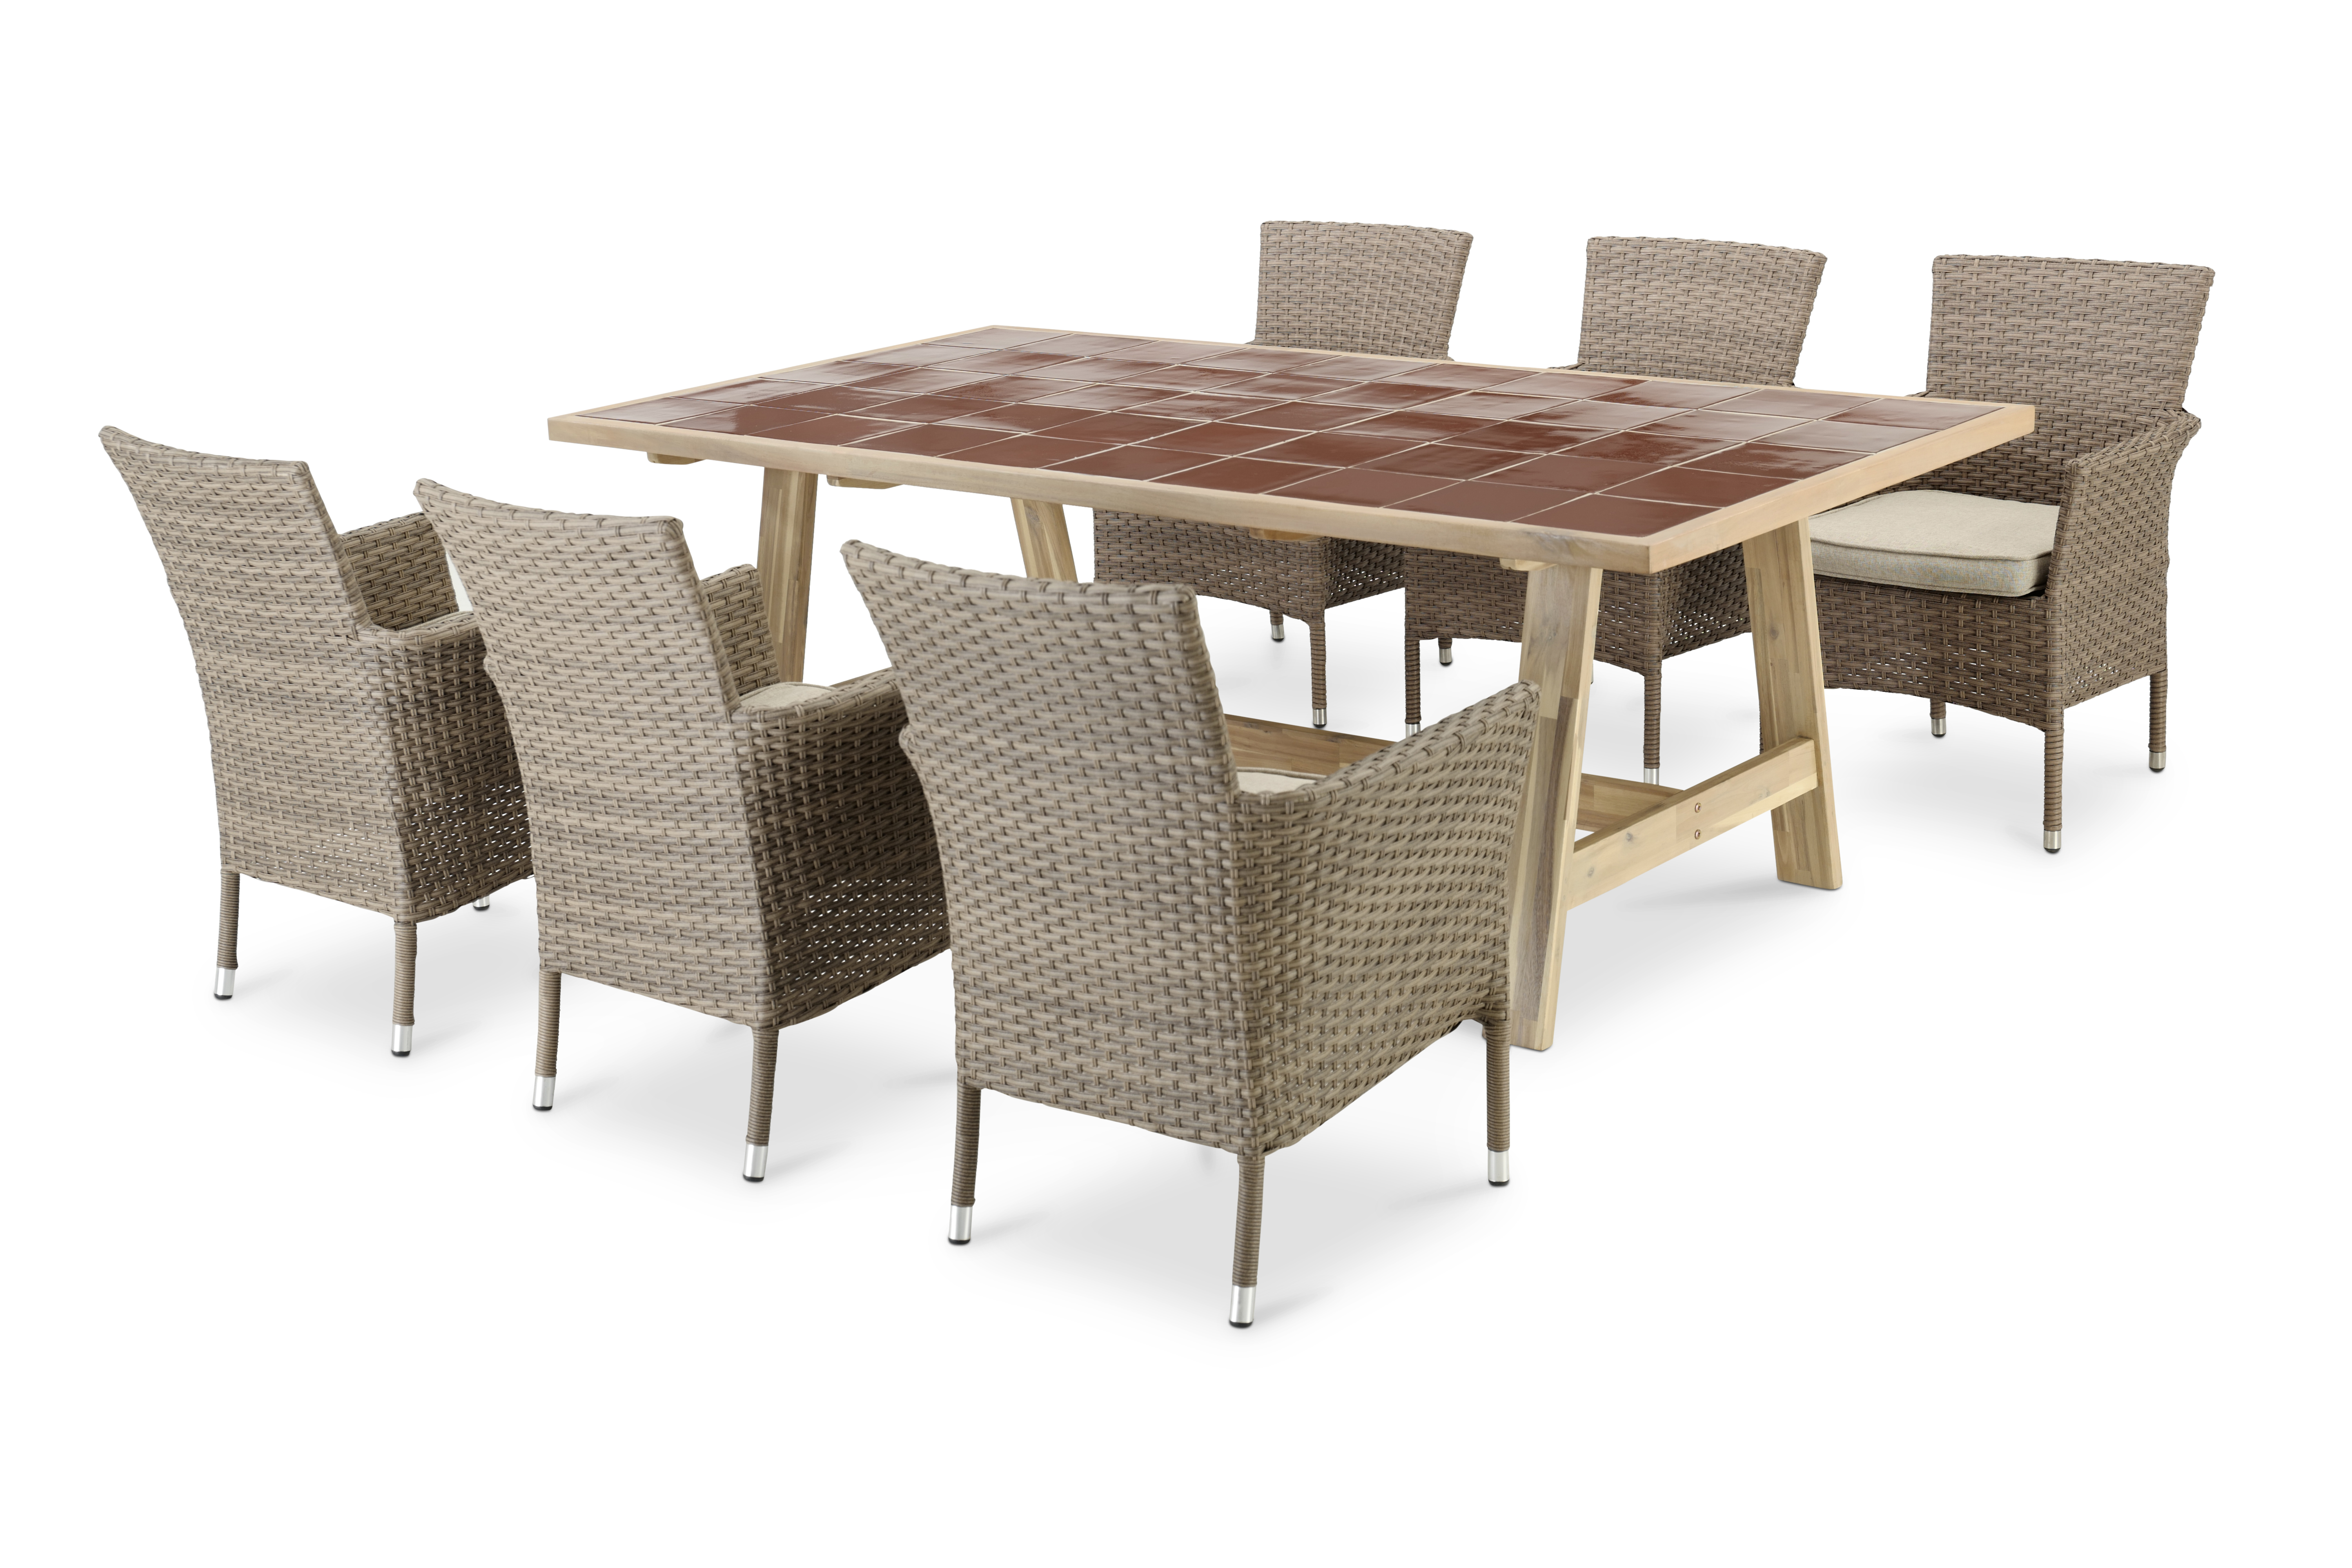 Table en céramique terre cuite 205x105 et 6 chaises empilables rotin